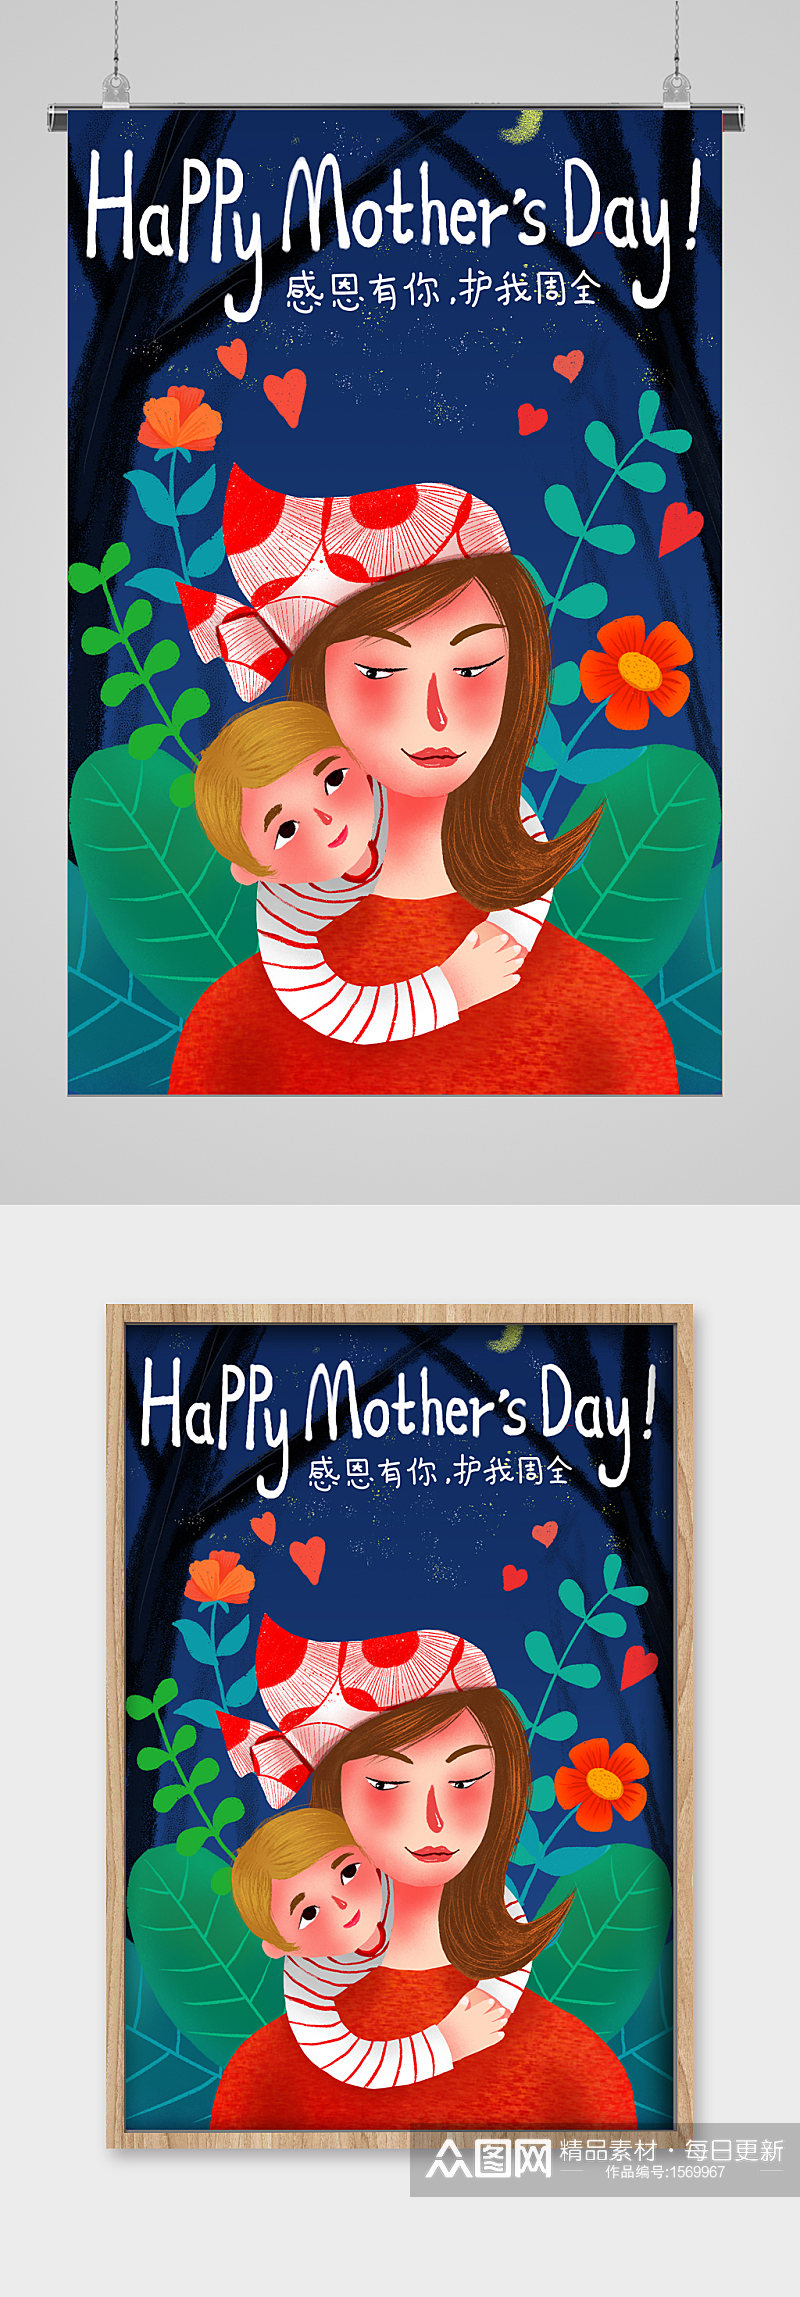 快乐母亲节高端母亲节宣传插画素材